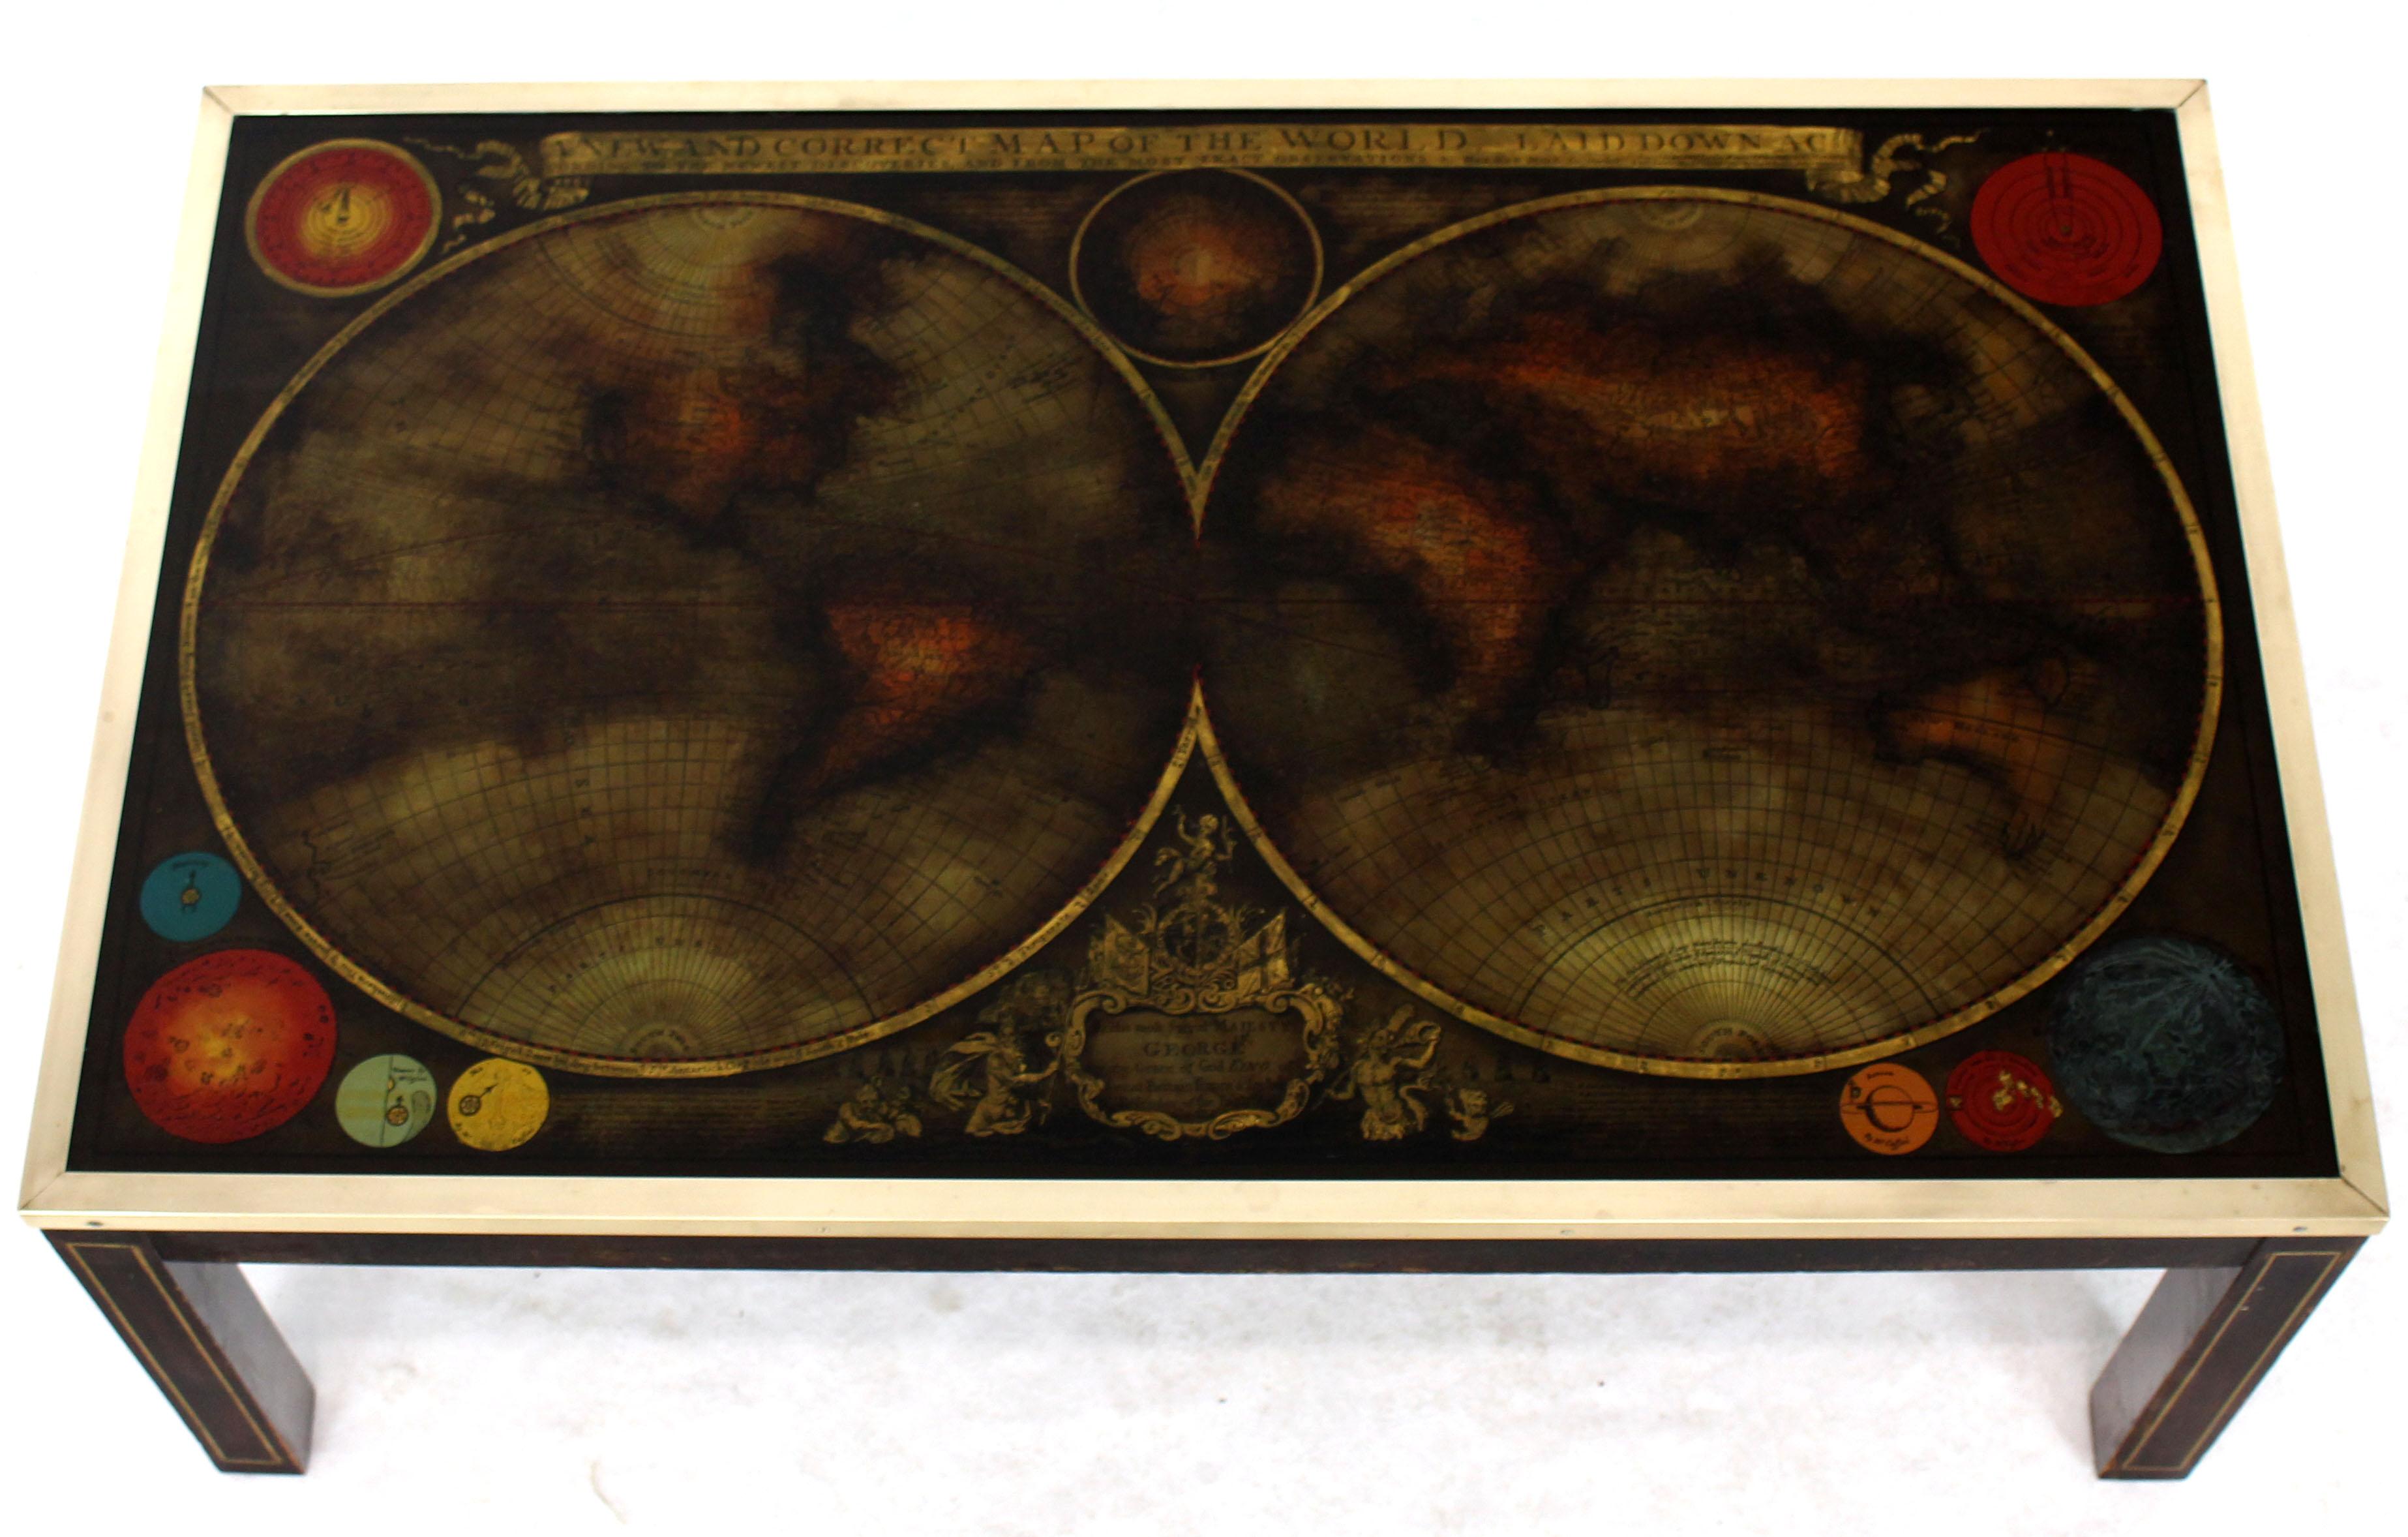 Mid-Century Modern reverse gemalt alten Atlas Karte Glasplatte Couchtisch. Beine mit Messingintarsien. Die Glasplatte ist mit einem Messingrahmen gesichert. Die Beine sind mit Flügelmuttern gesichert.